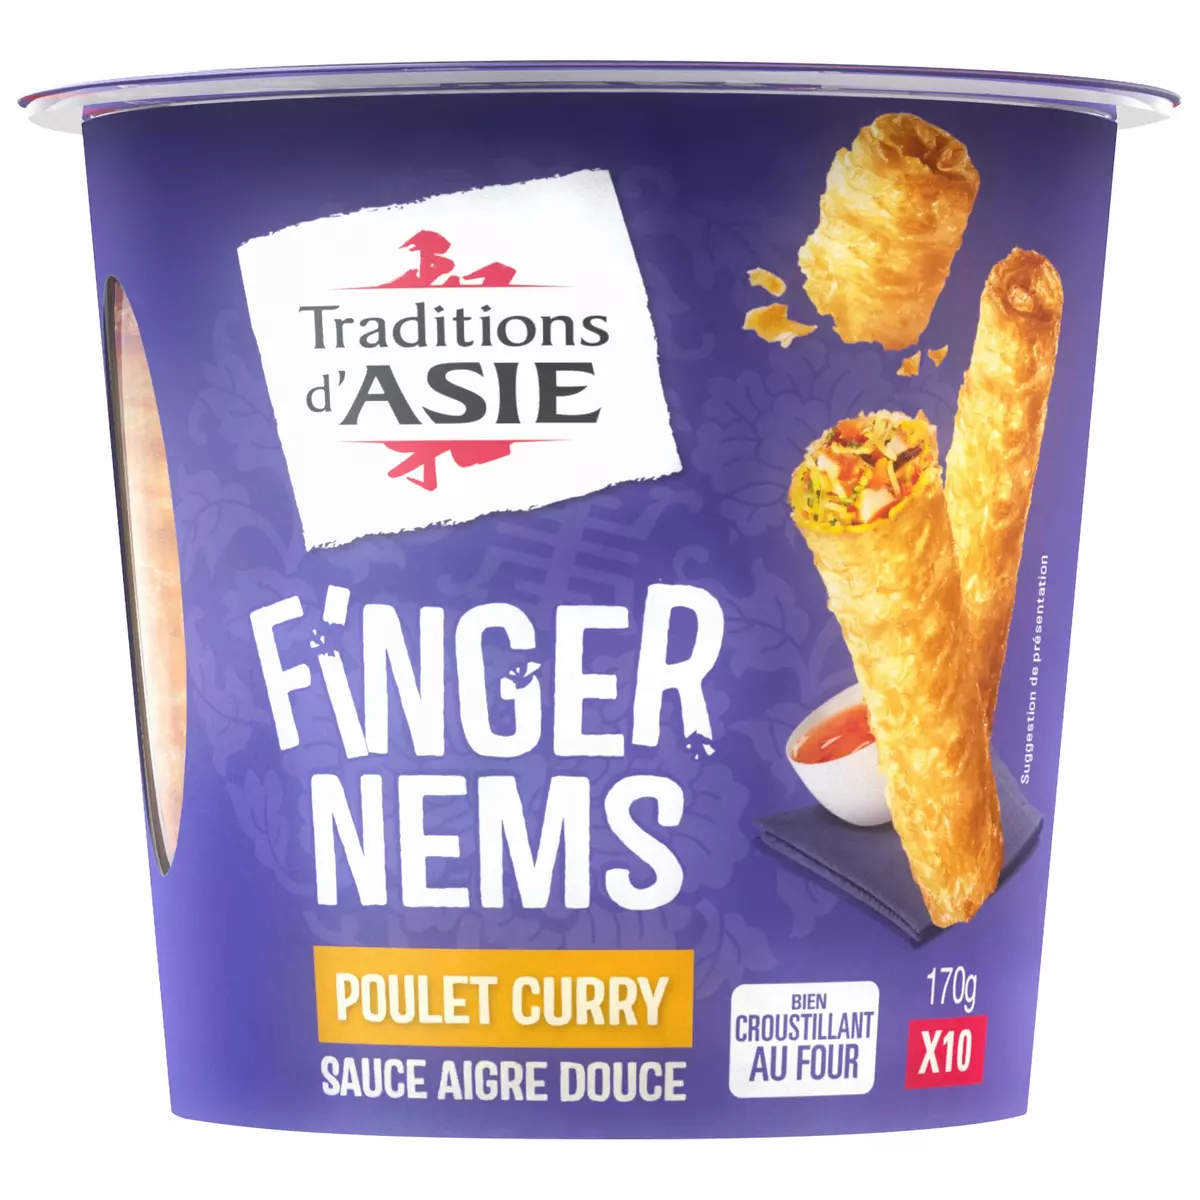 TRADITIONS D'ASIE Finger nems au poulet curry sauce aigre douce 10 pièces 170g